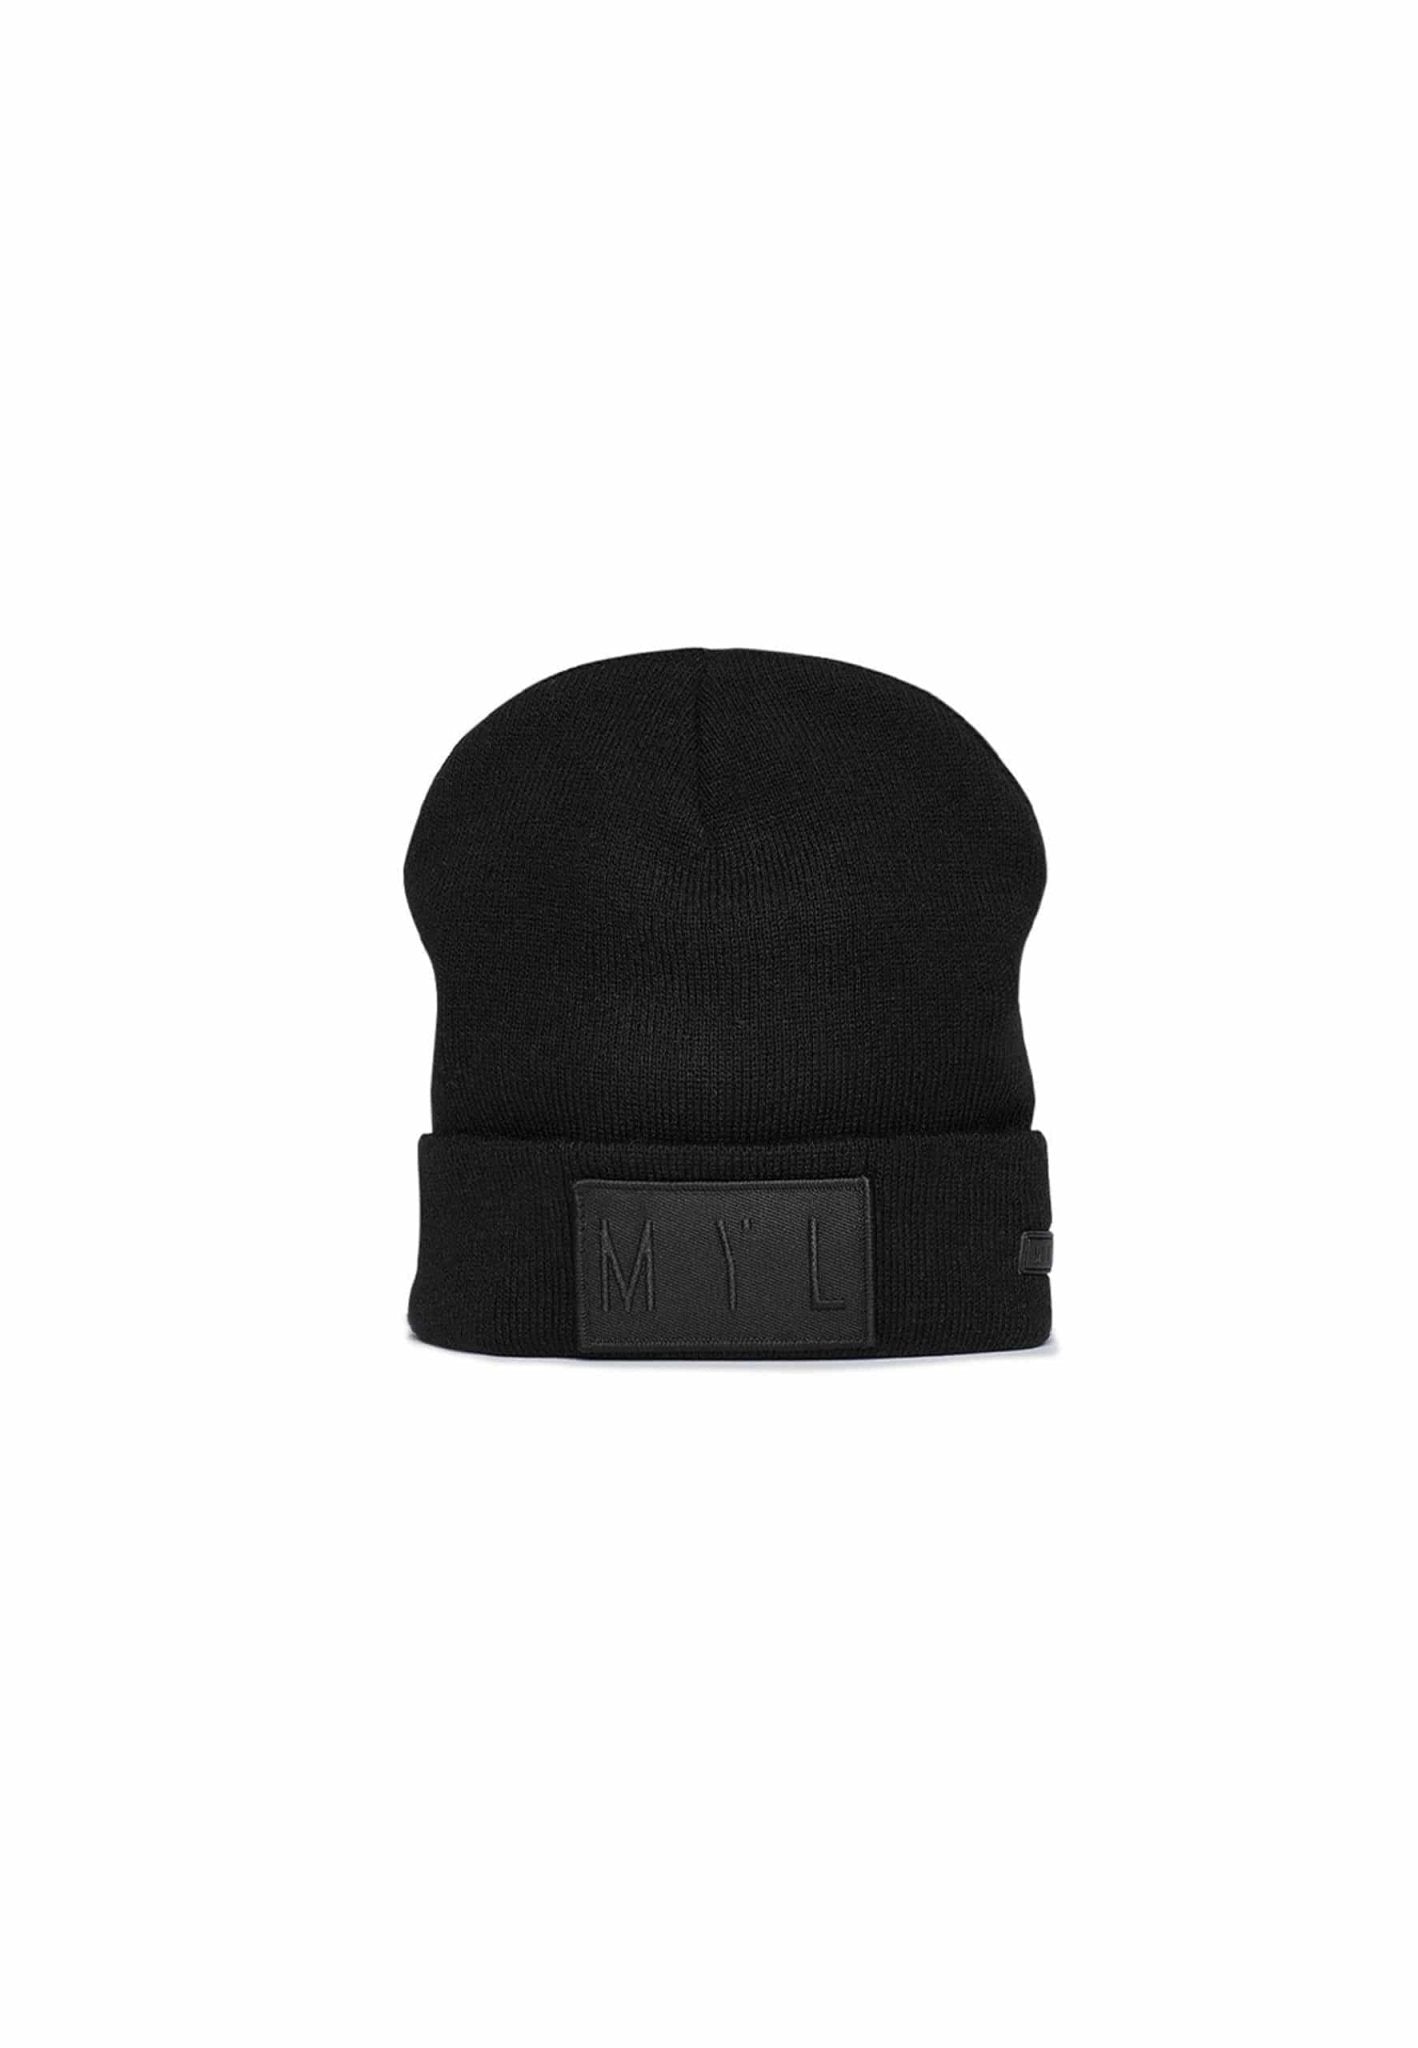 Beanie hat with logo pocket - MYL BERLIN - 4260654110500 - 4260654110500